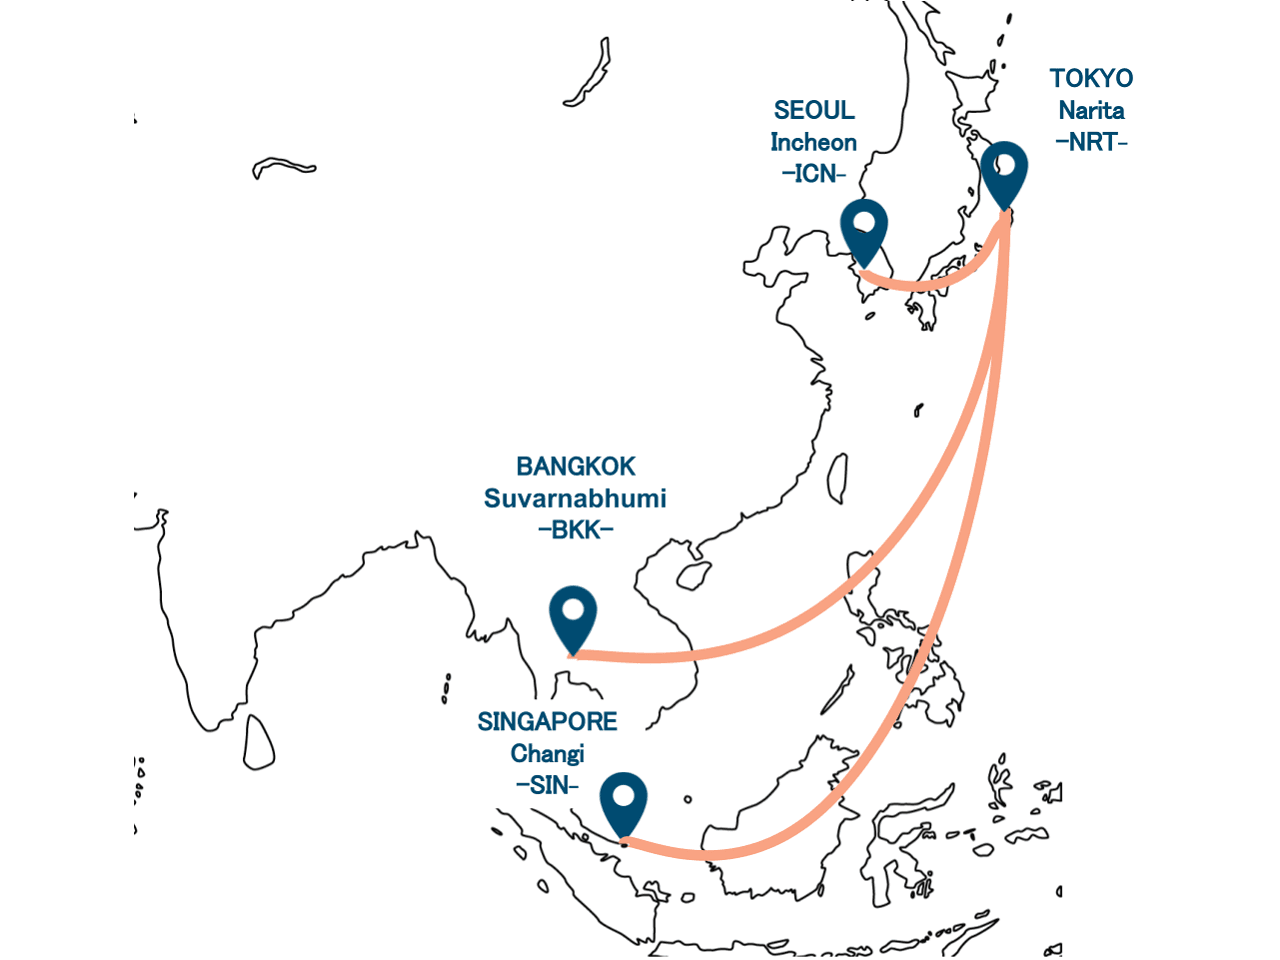 ตั้งแต่วันที่ 9 กุมภาพันธ์ 2024 AirJapan จะให้บริการเส้นทางกรุงเทพฯ-สนามบินนานาชาติสุวรรณภูมิ (BKK) จากสนามบินนานาชาติโตเกียว-นาริตะ (NRT)